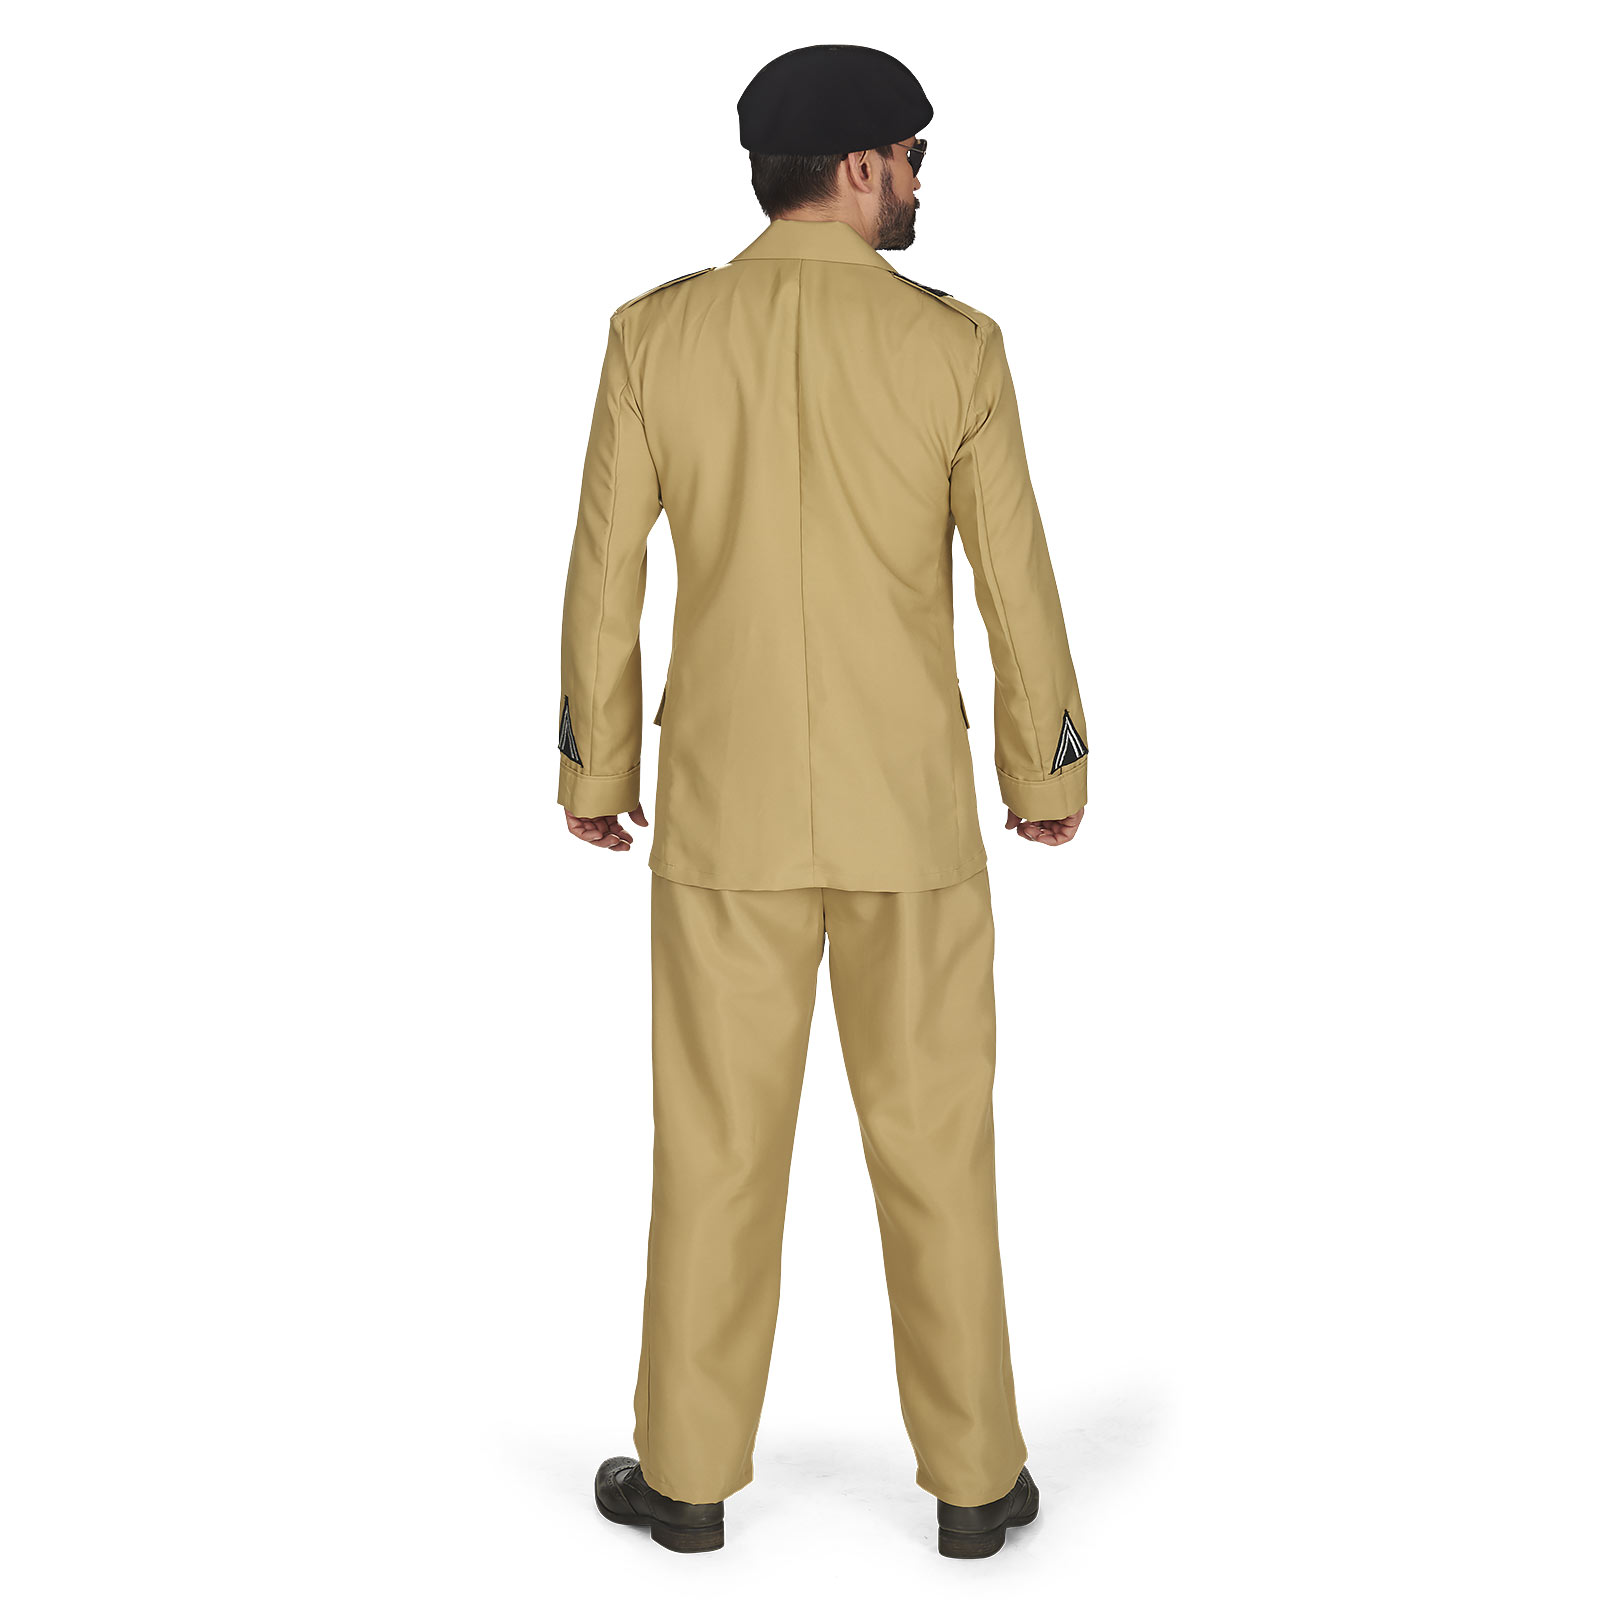 Brown Uniform - Men's Costume